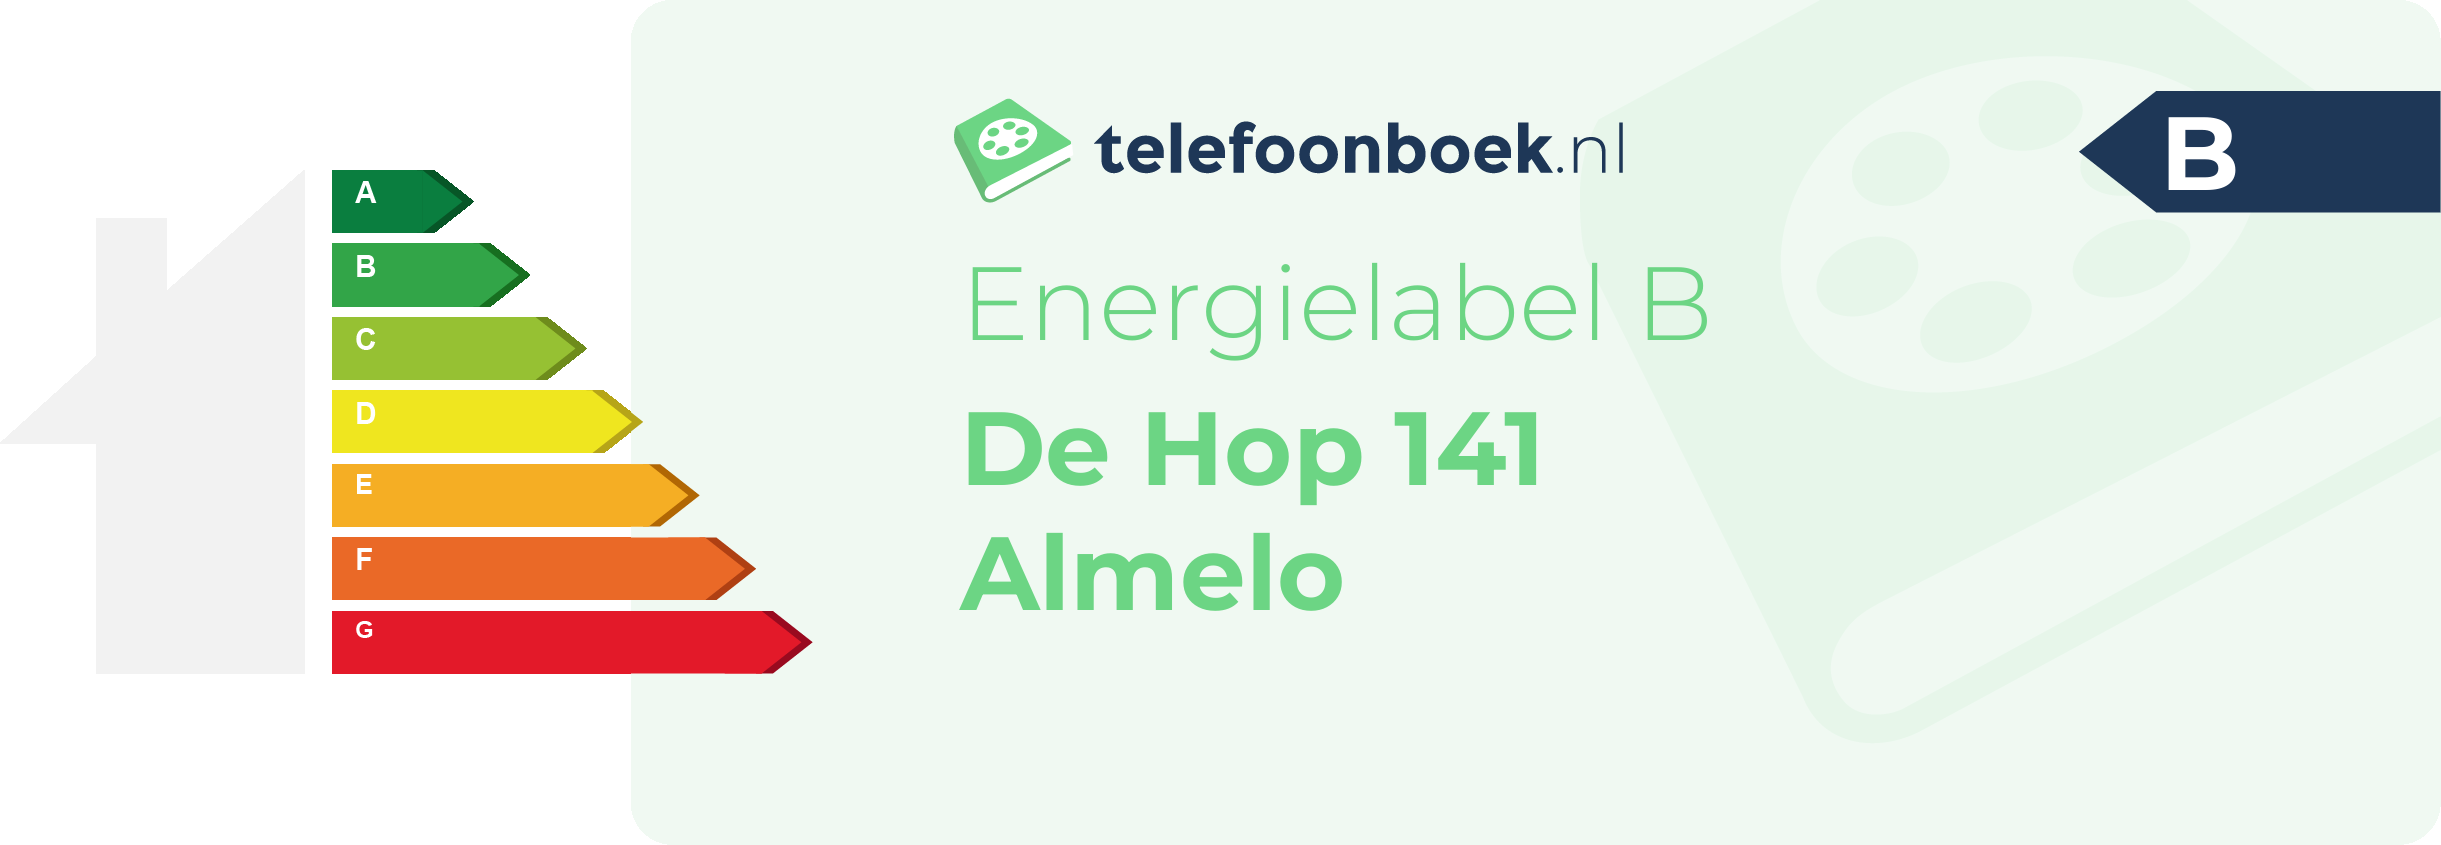 Energielabel De Hop 141 Almelo